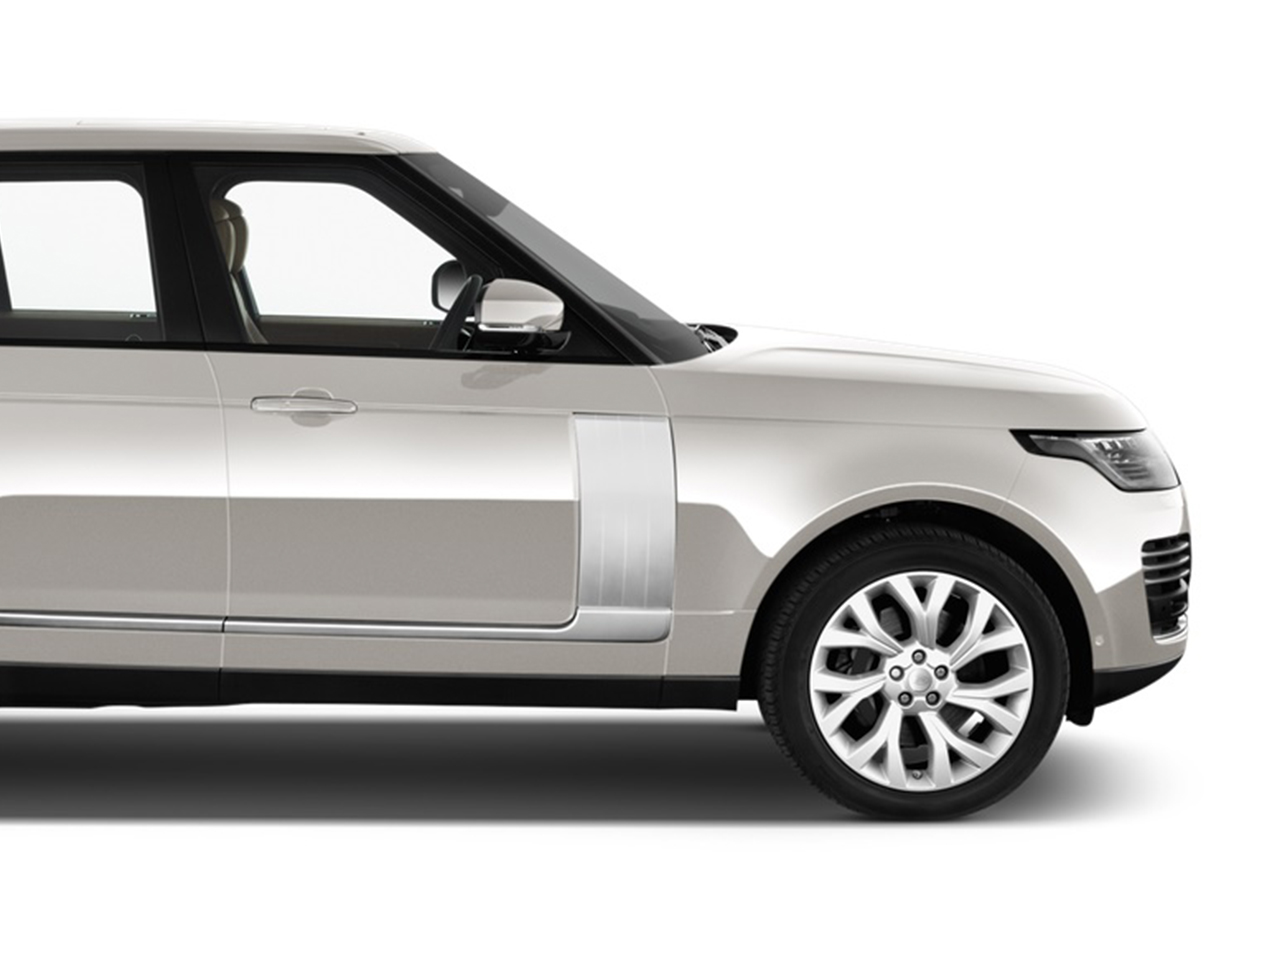 Range Rover Vogue SE 3.0, V6 car for hire